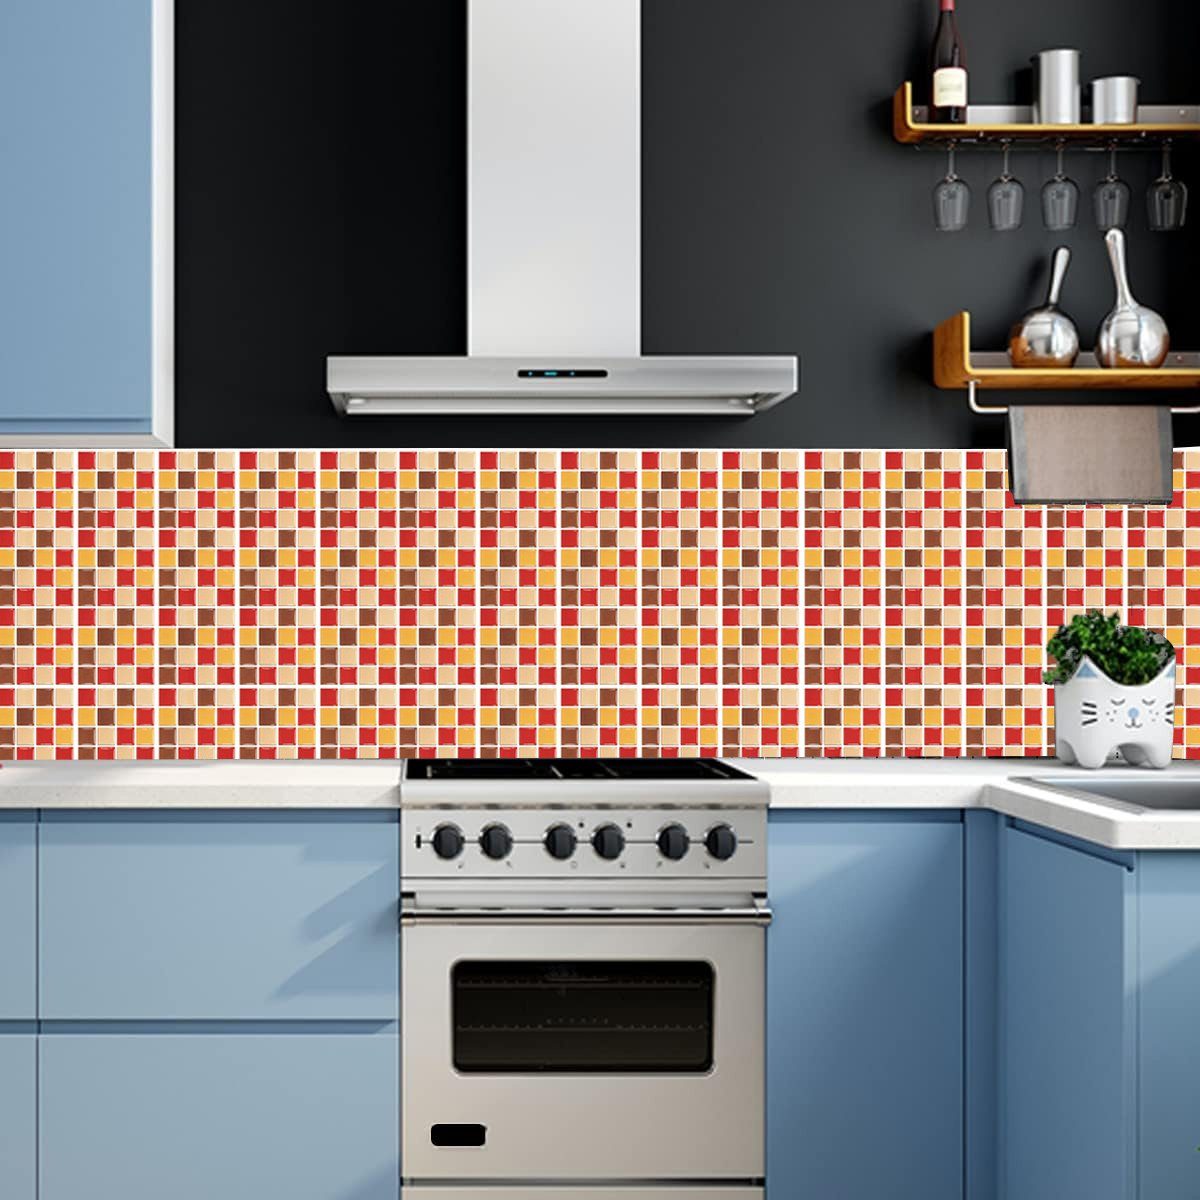 Jormftte Wandtattoo Mosaik Aufkleber,für Wandfliese Küche Bad und Mehrfarbig Fliesenaufkleber 2